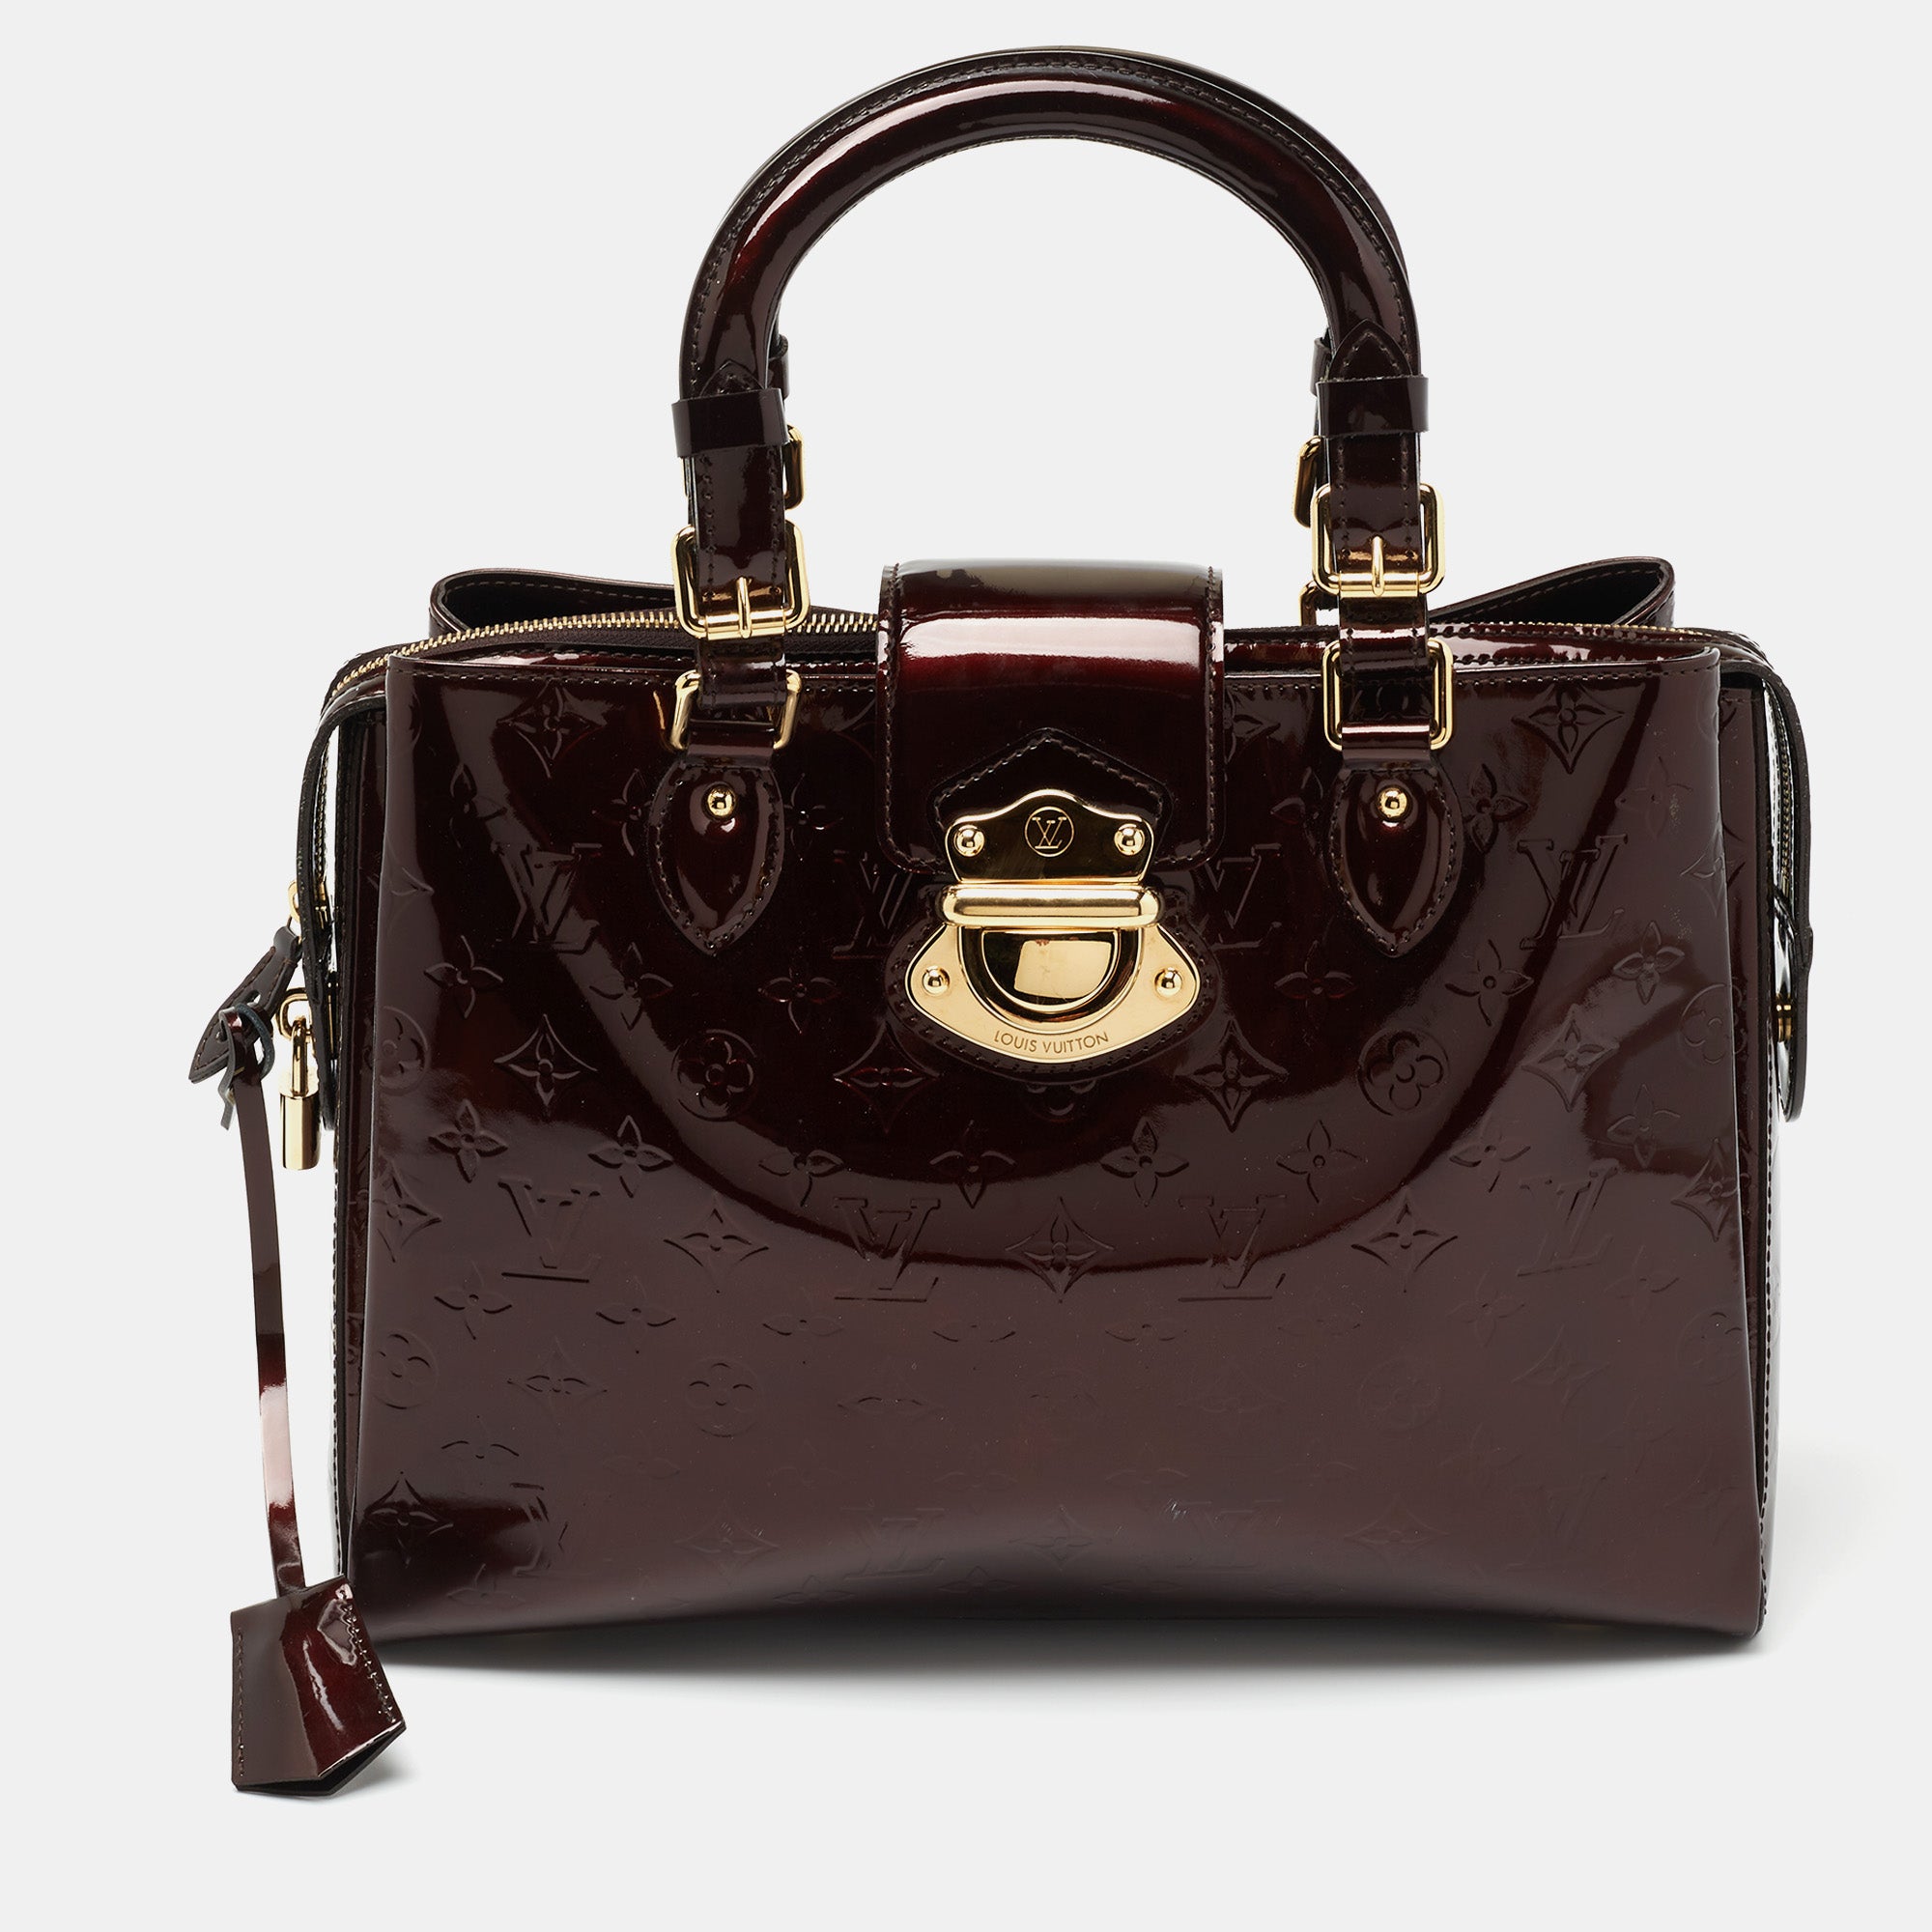 Louis Vuitton Avalon Zipped Amarante Monogram Vernis Shoulder Bag18LK0116